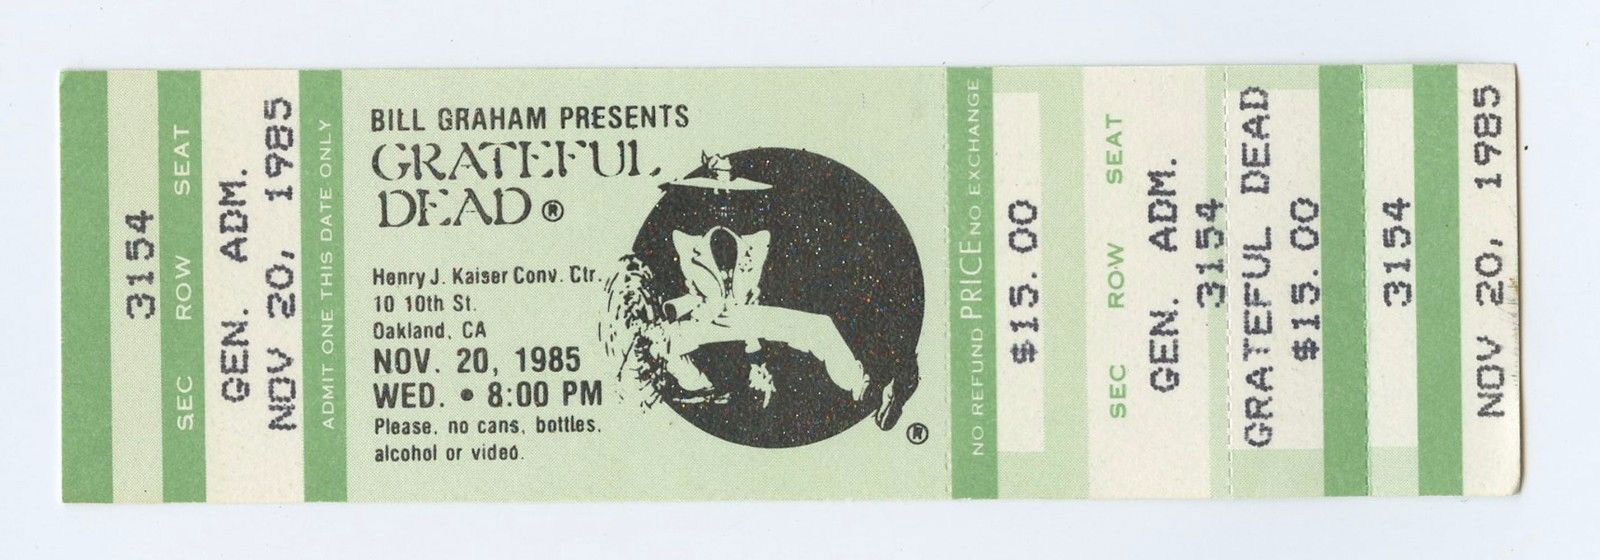 Grateful Dead Vintage Ticket 1985 Nov 20 Henry J Kaiser Conv Ctr Oakland 